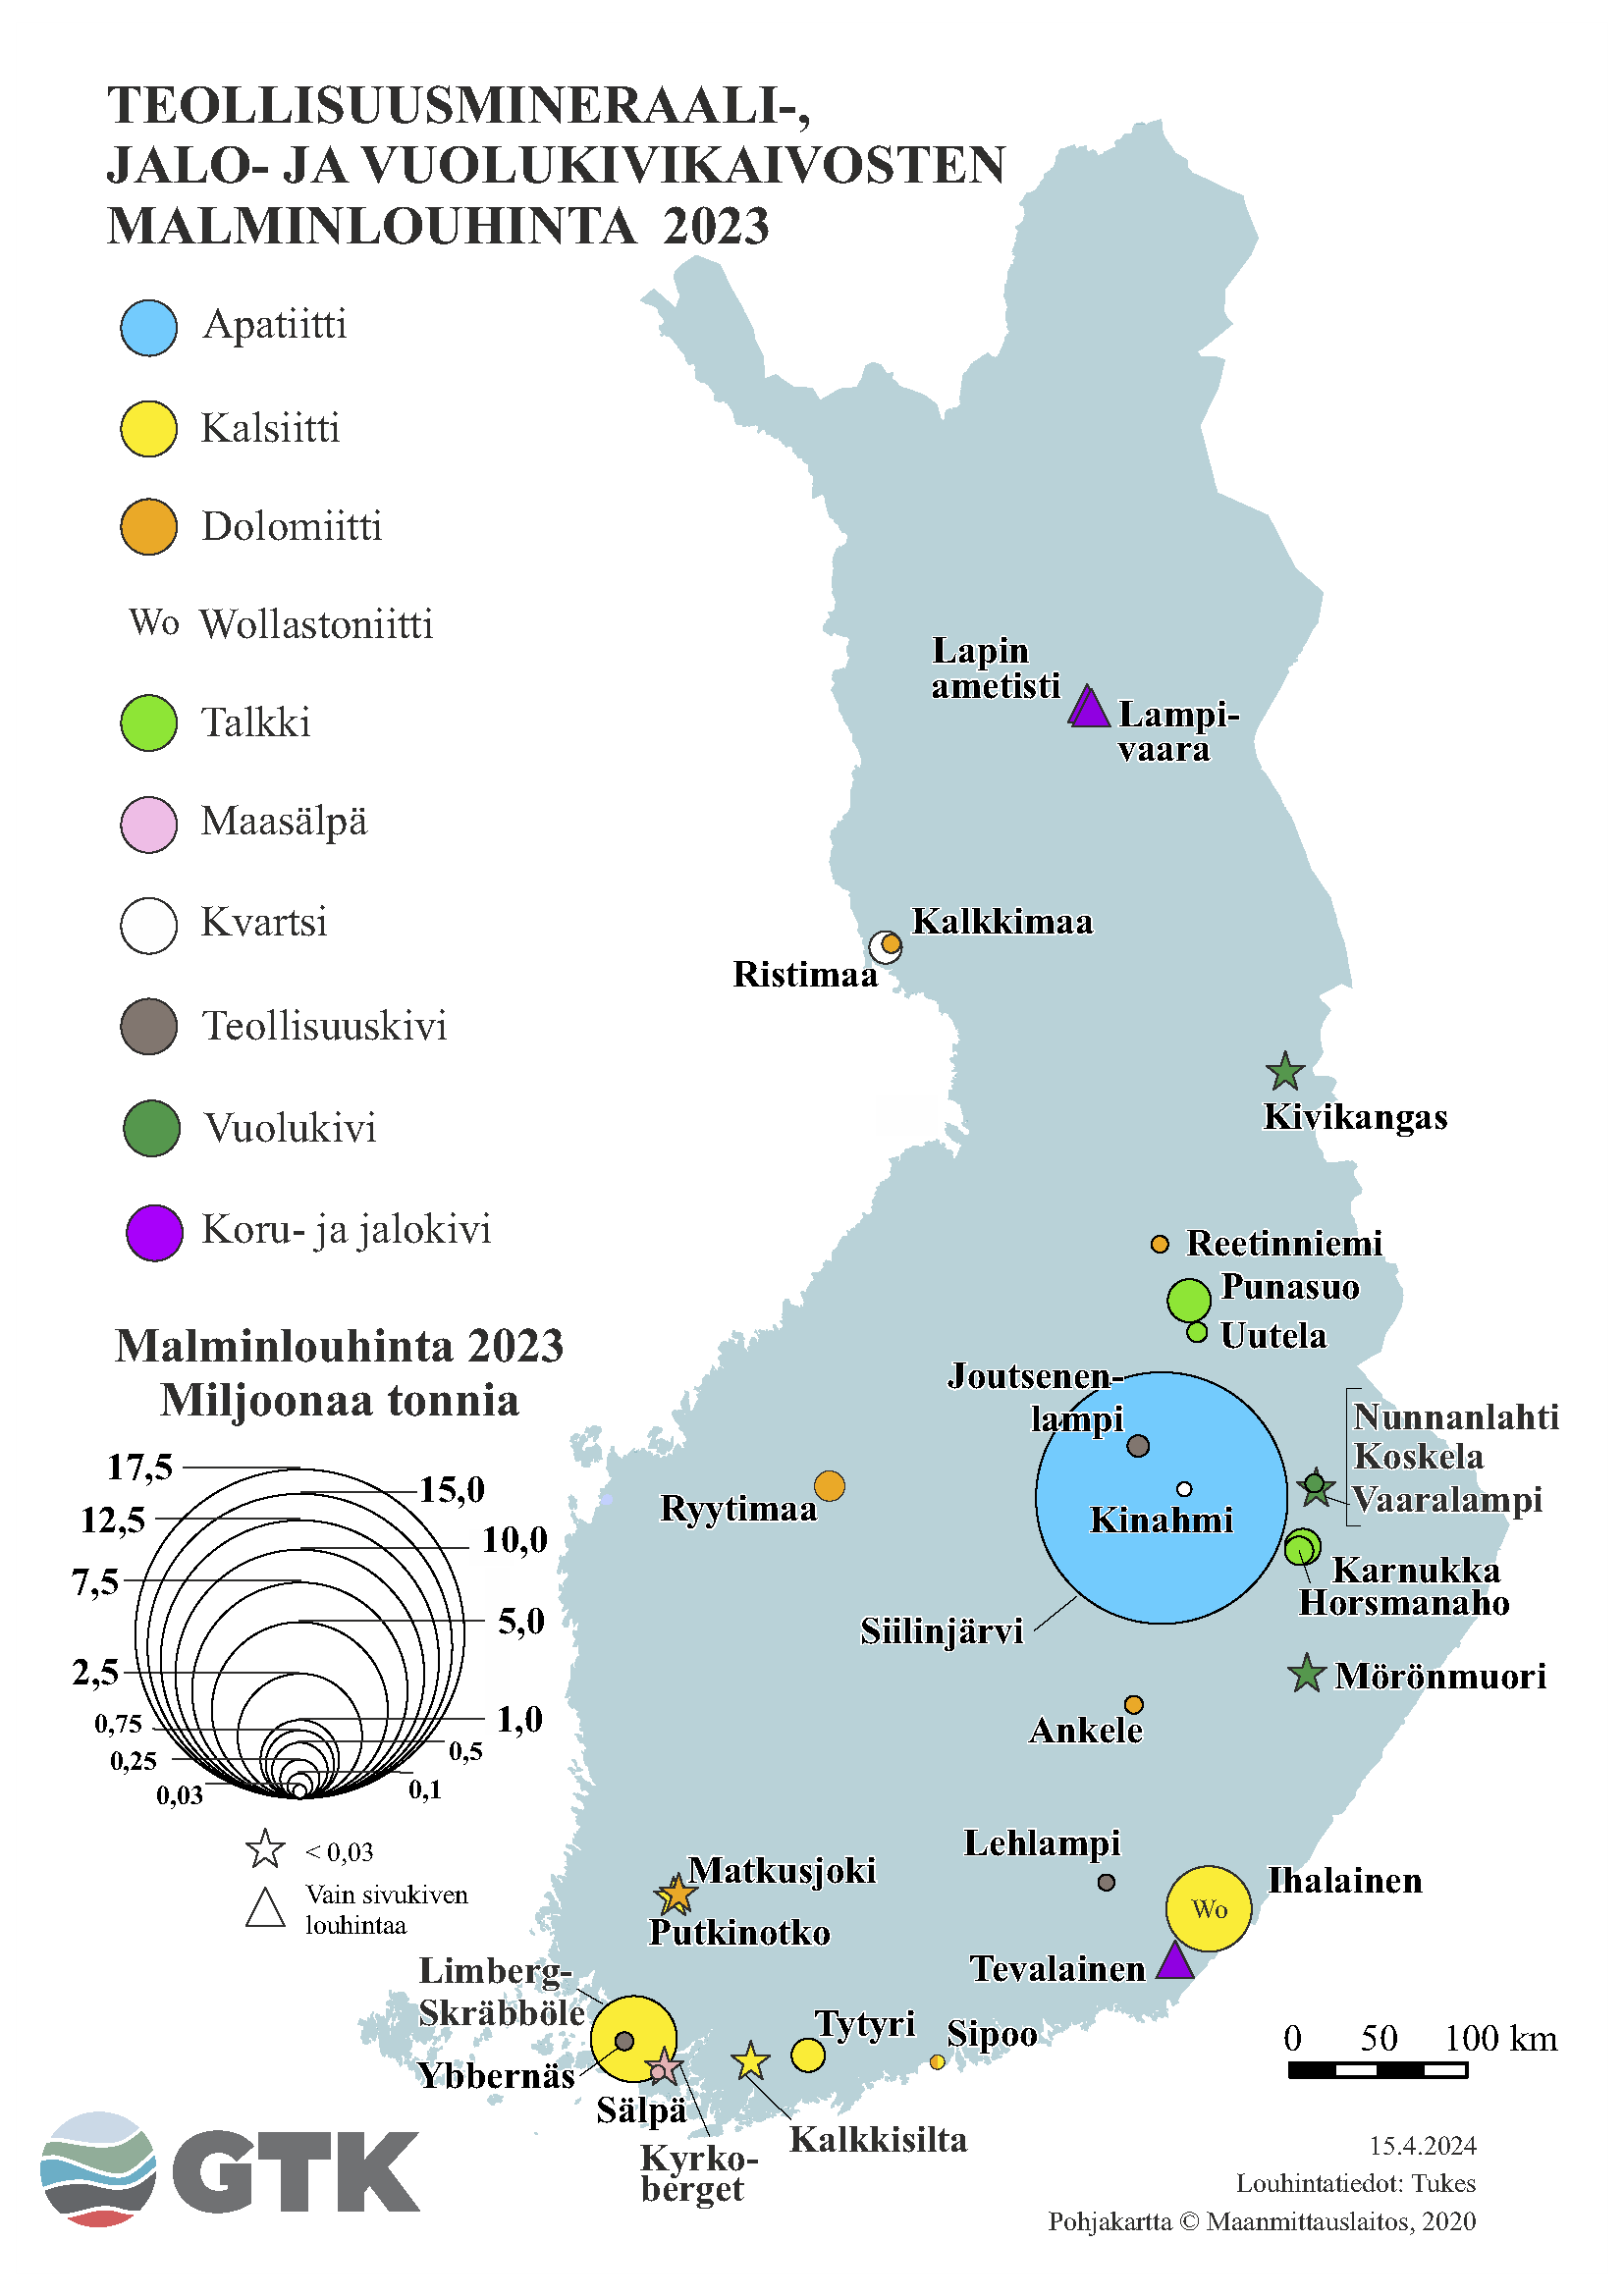 Suomen kartta, johon on merkattu teollisuusmineraali-, jalo- ja vuolukivikaivosten malminlouhinta vuonna 2023